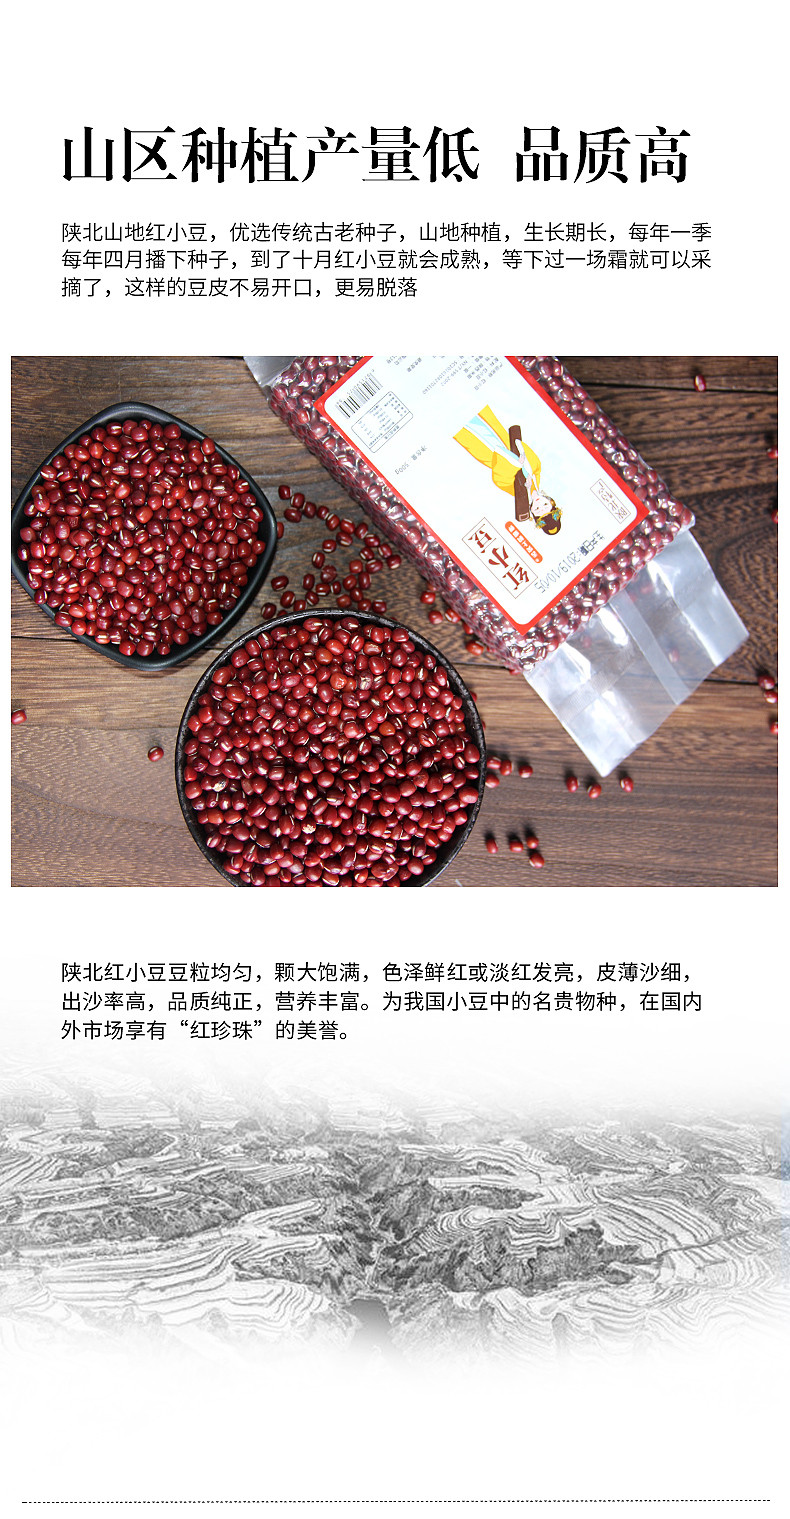 【半价】陕北农家特产红豆500g绿豆500g组合装